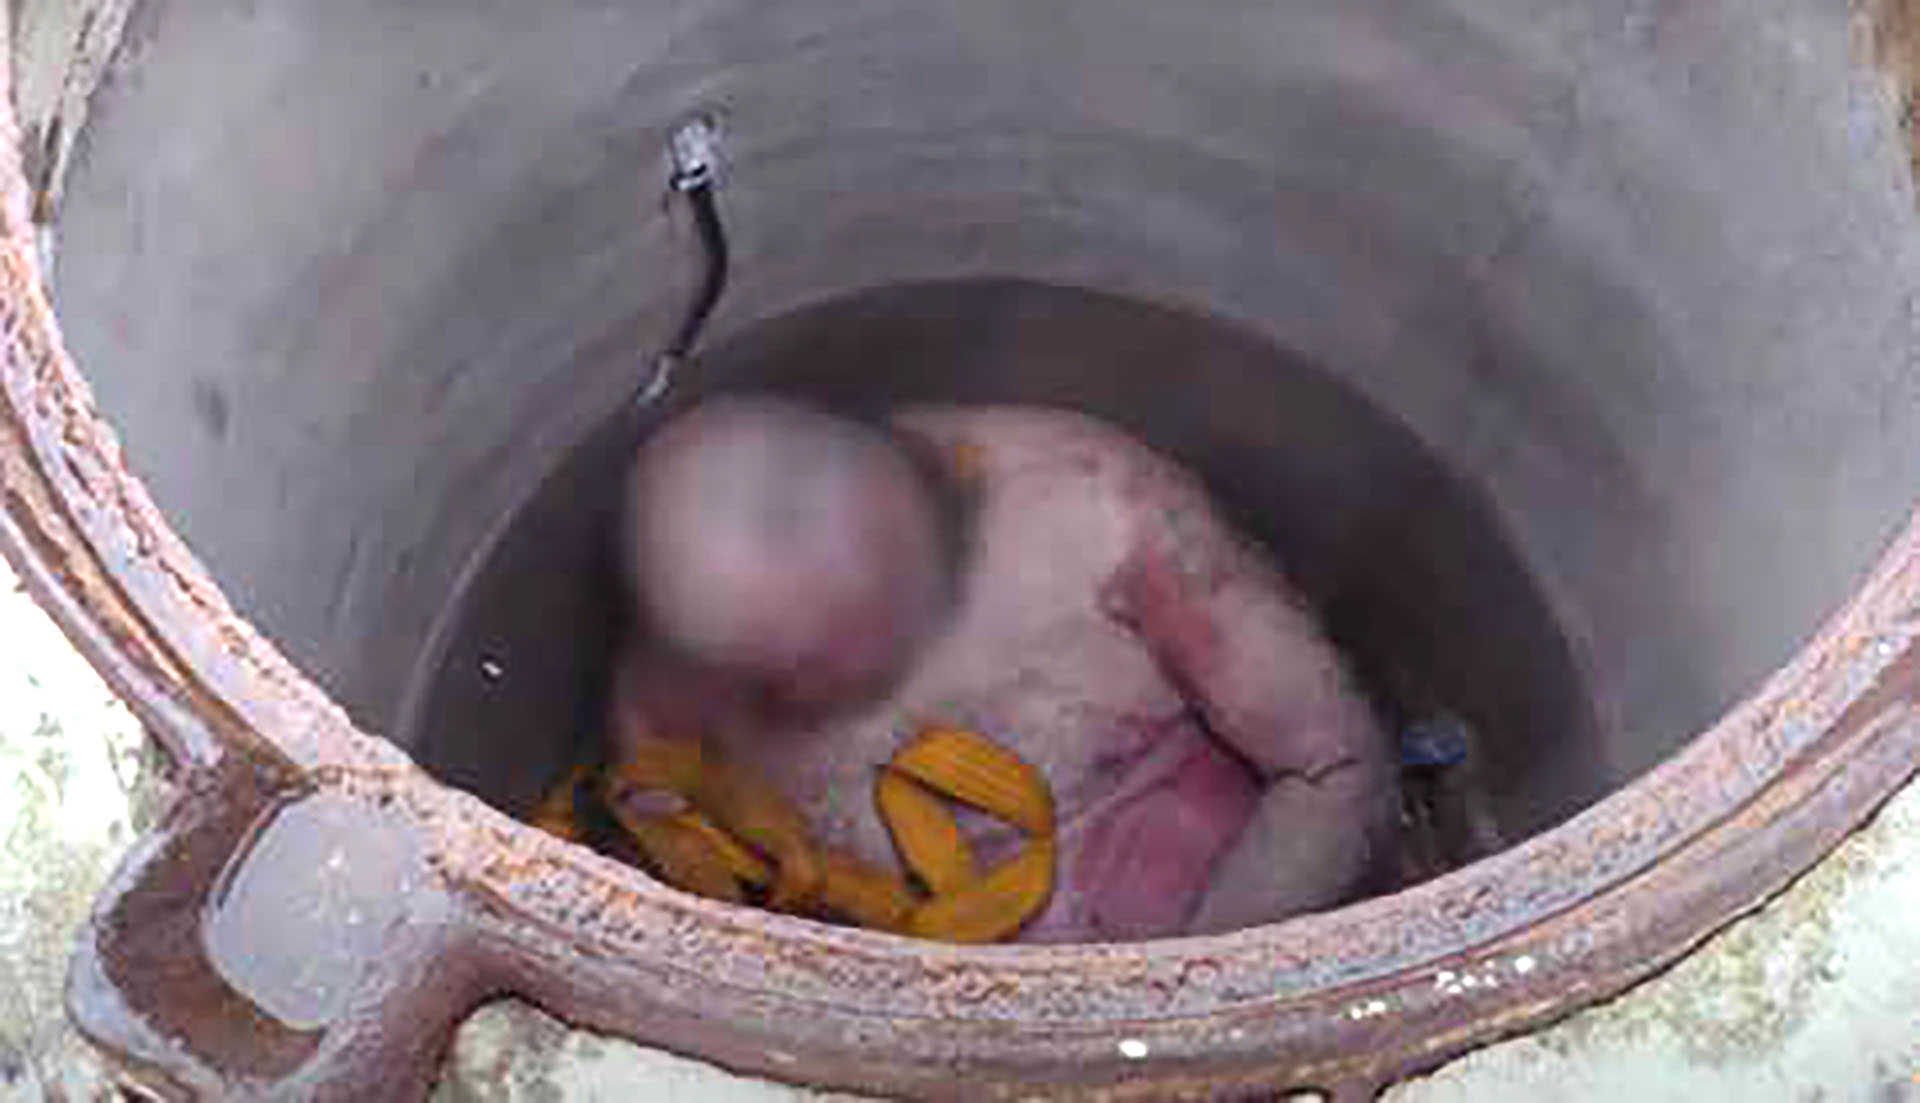 El pozo de aguas residuales donde estuvo detenido Oleg. Tras la liberación, se encontró en él el cuerpo de otra persona que fue asesinada